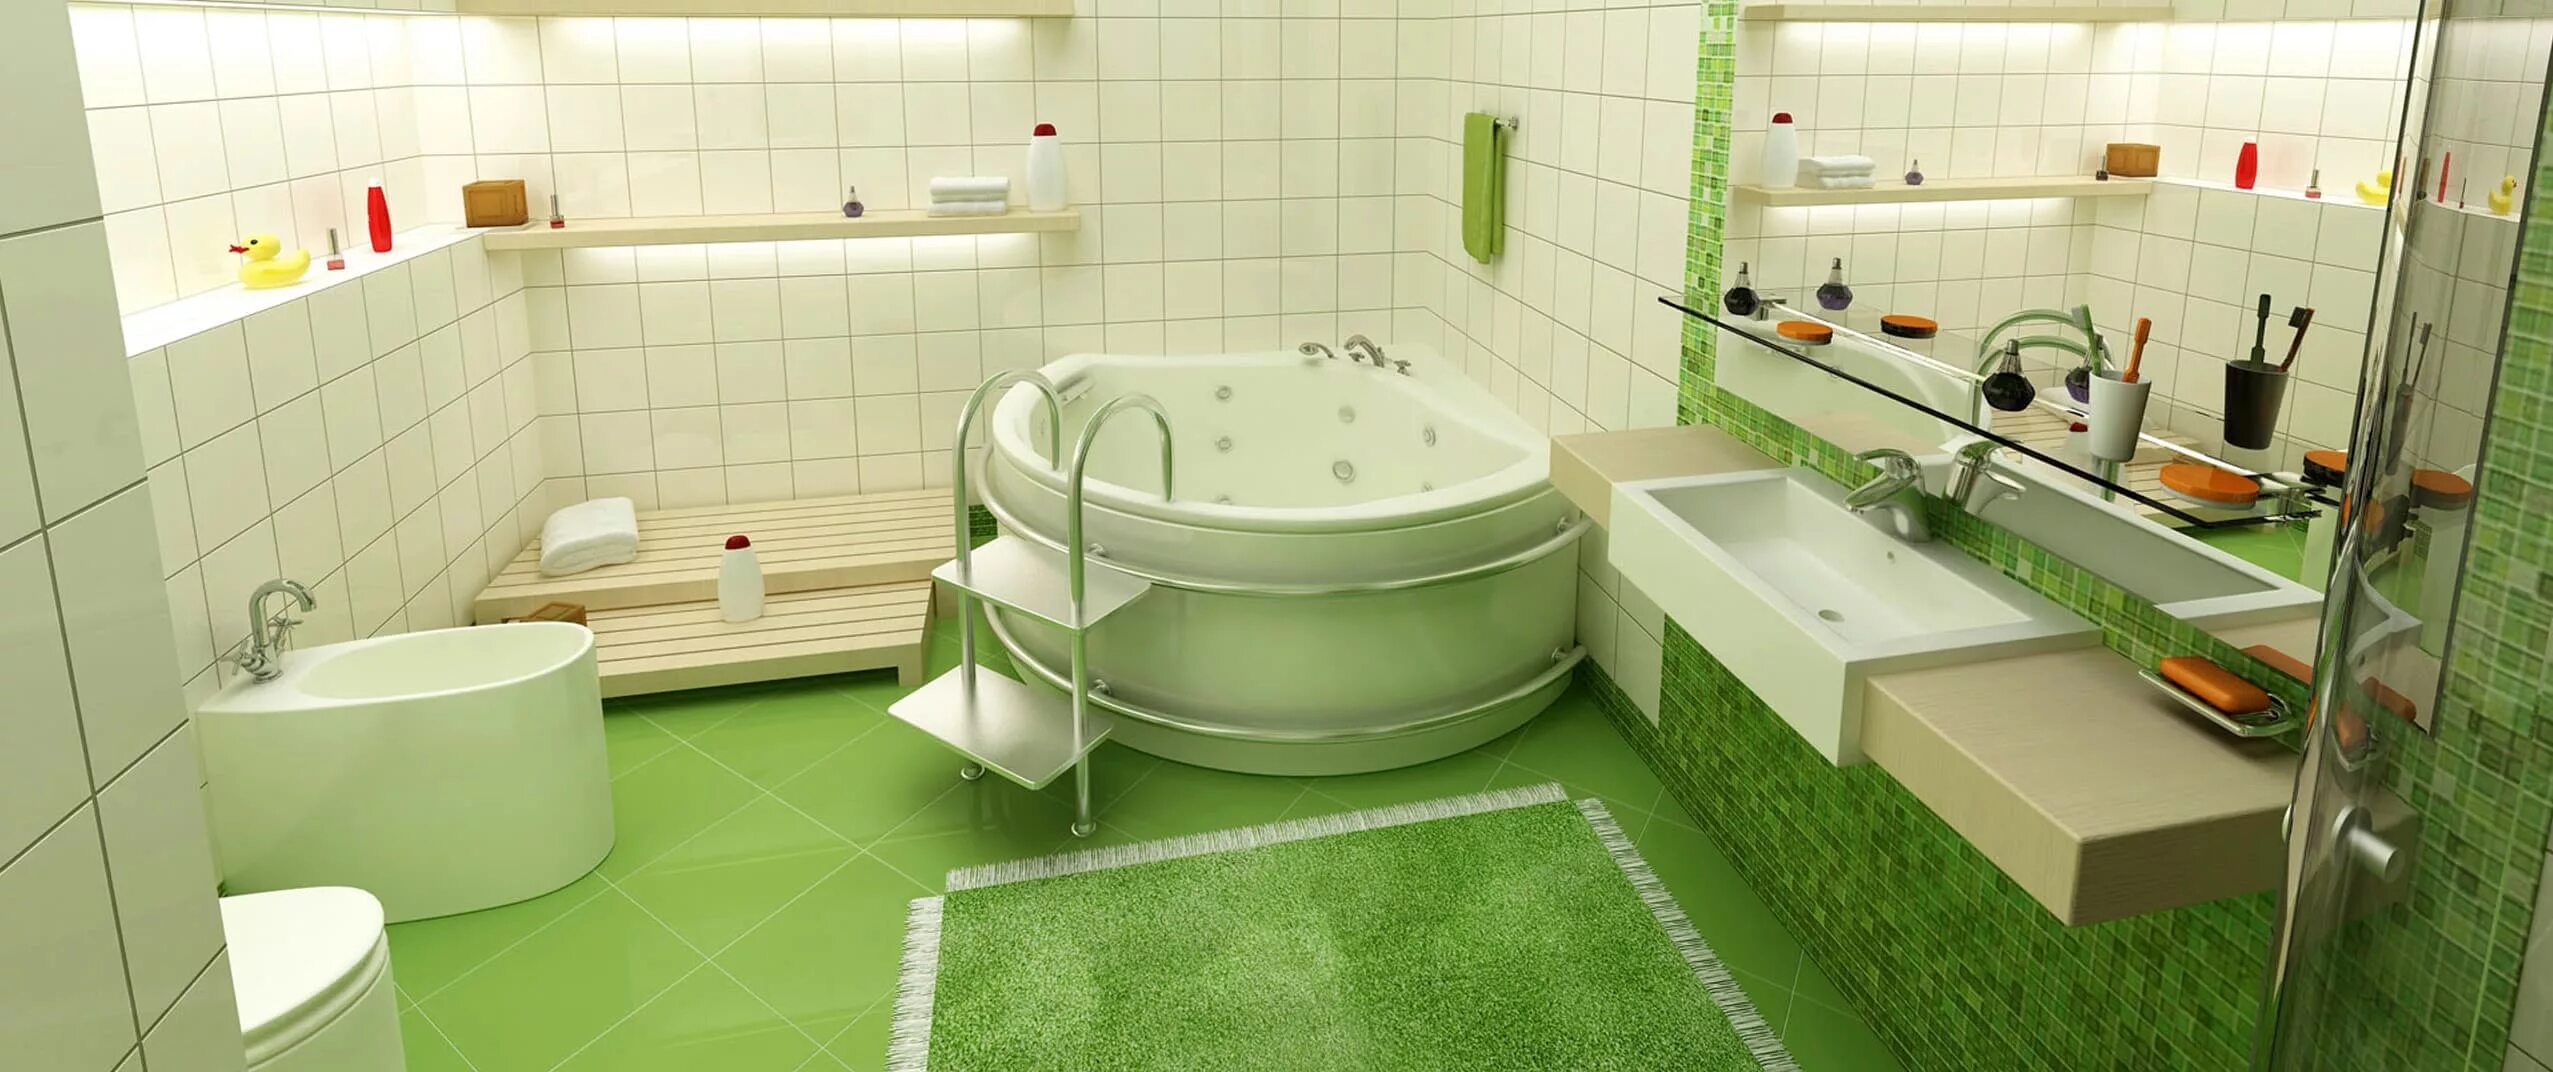 Ванная уфа цены. Ванная комната. Дизайн ванной комнаты. Ванная после ремонта. Панорама ванной комнаты.